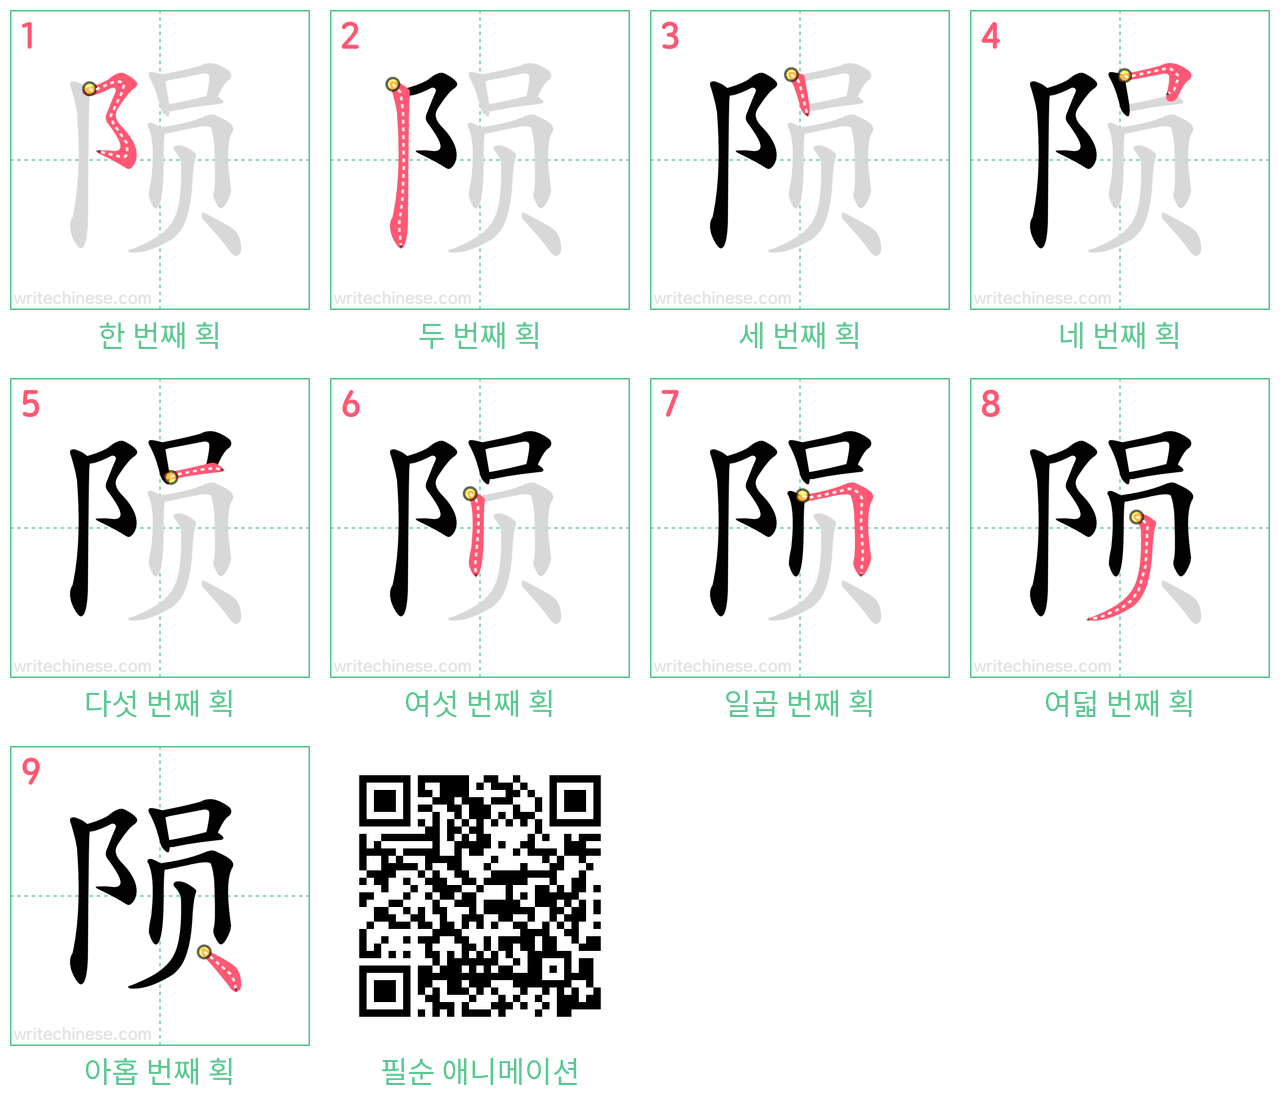 陨 step-by-step stroke order diagrams